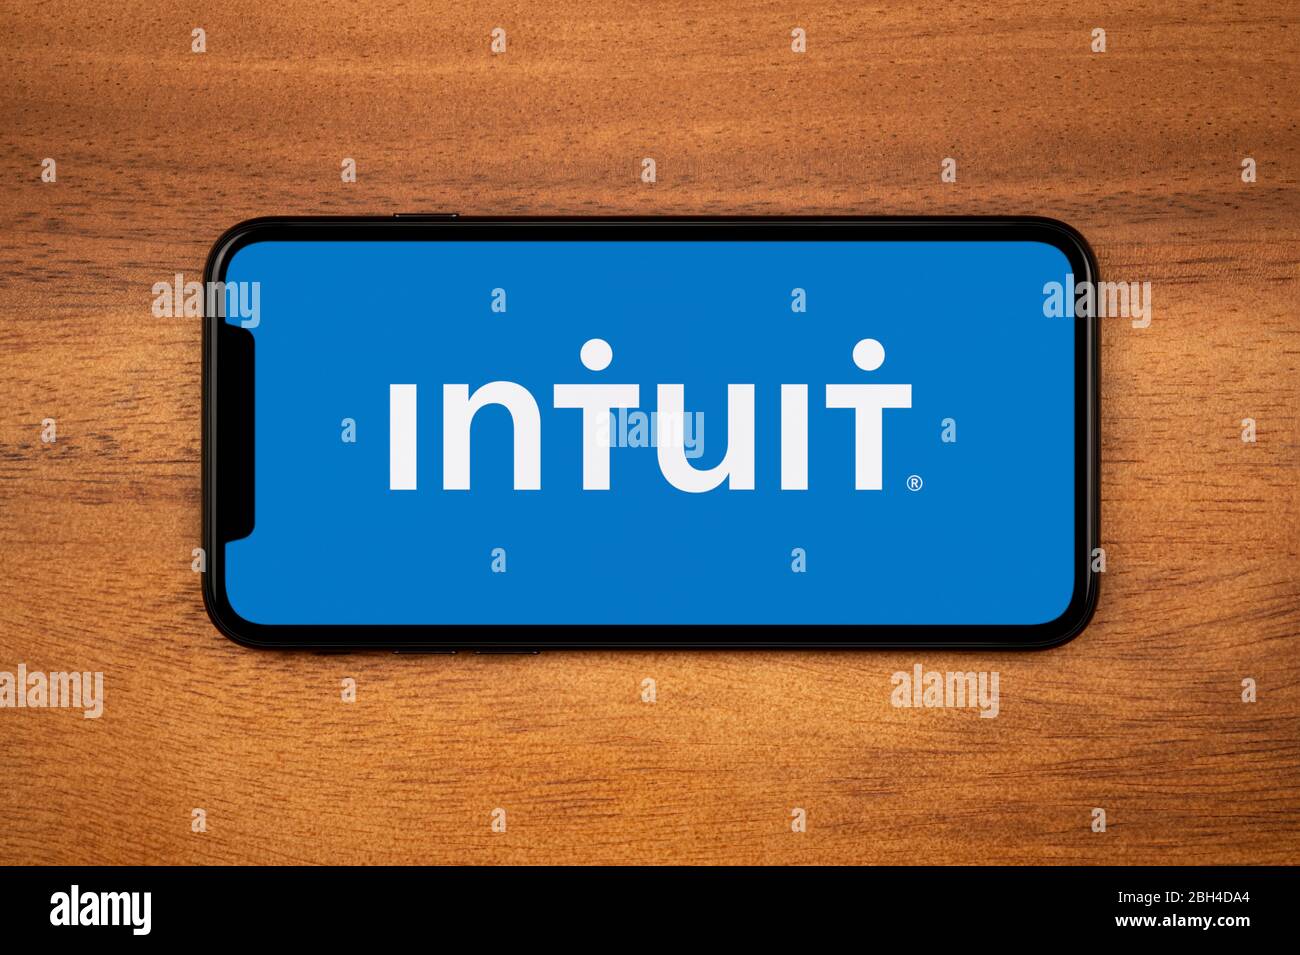 Un smartphone que muestra el logotipo Intuit descansa sobre una mesa de madera plana (sólo para uso editorial). Foto de stock